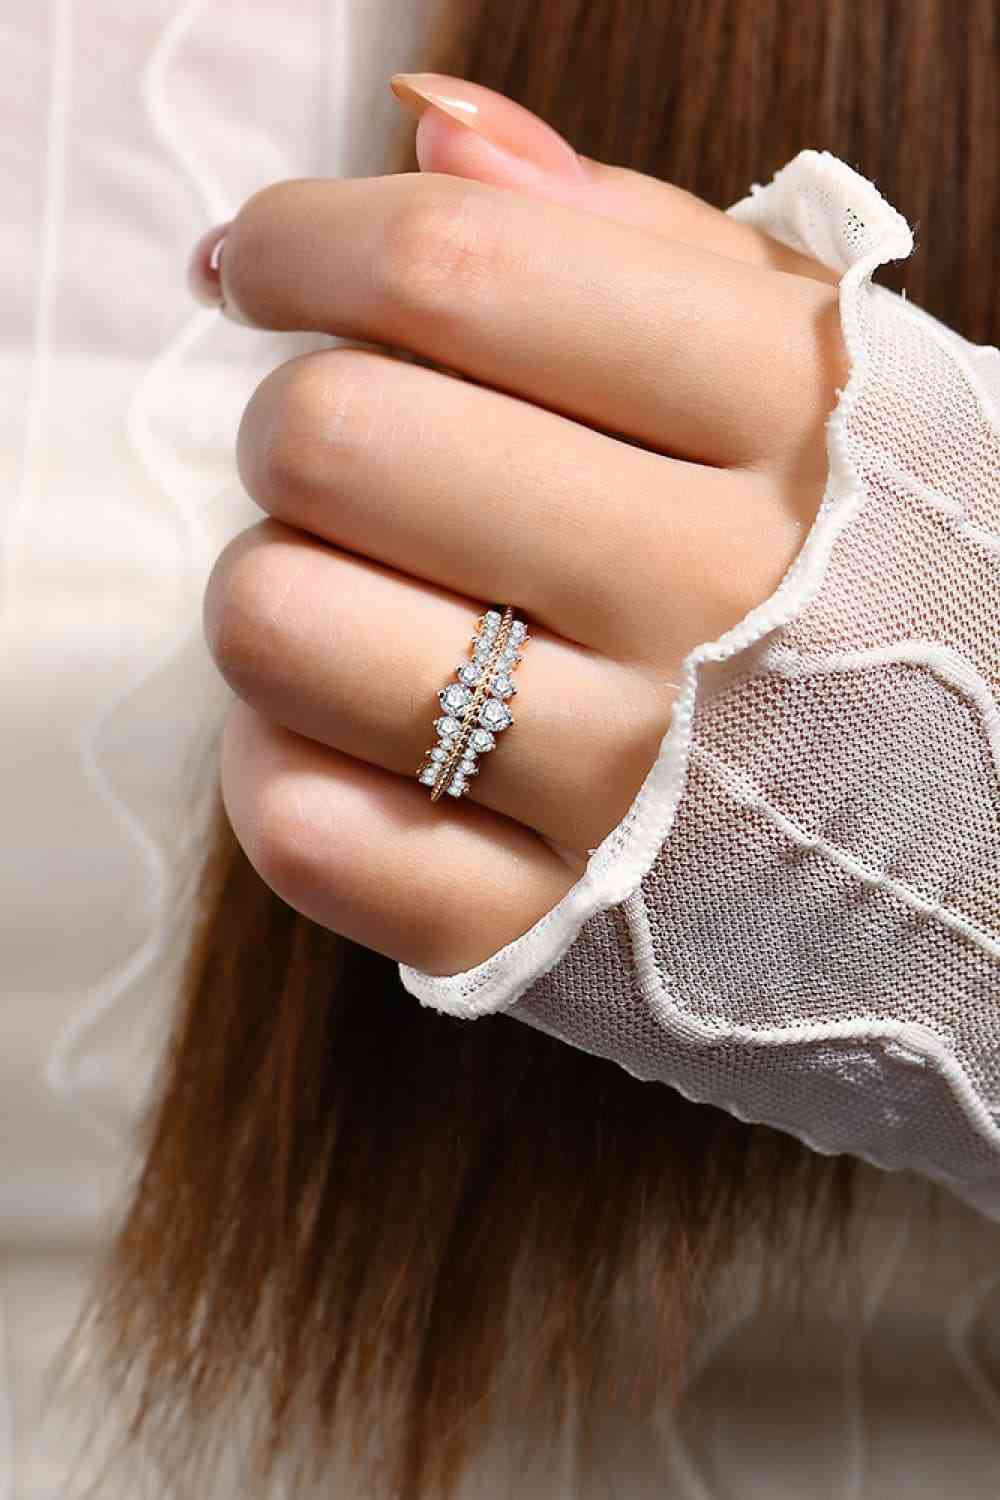 My Love Ring